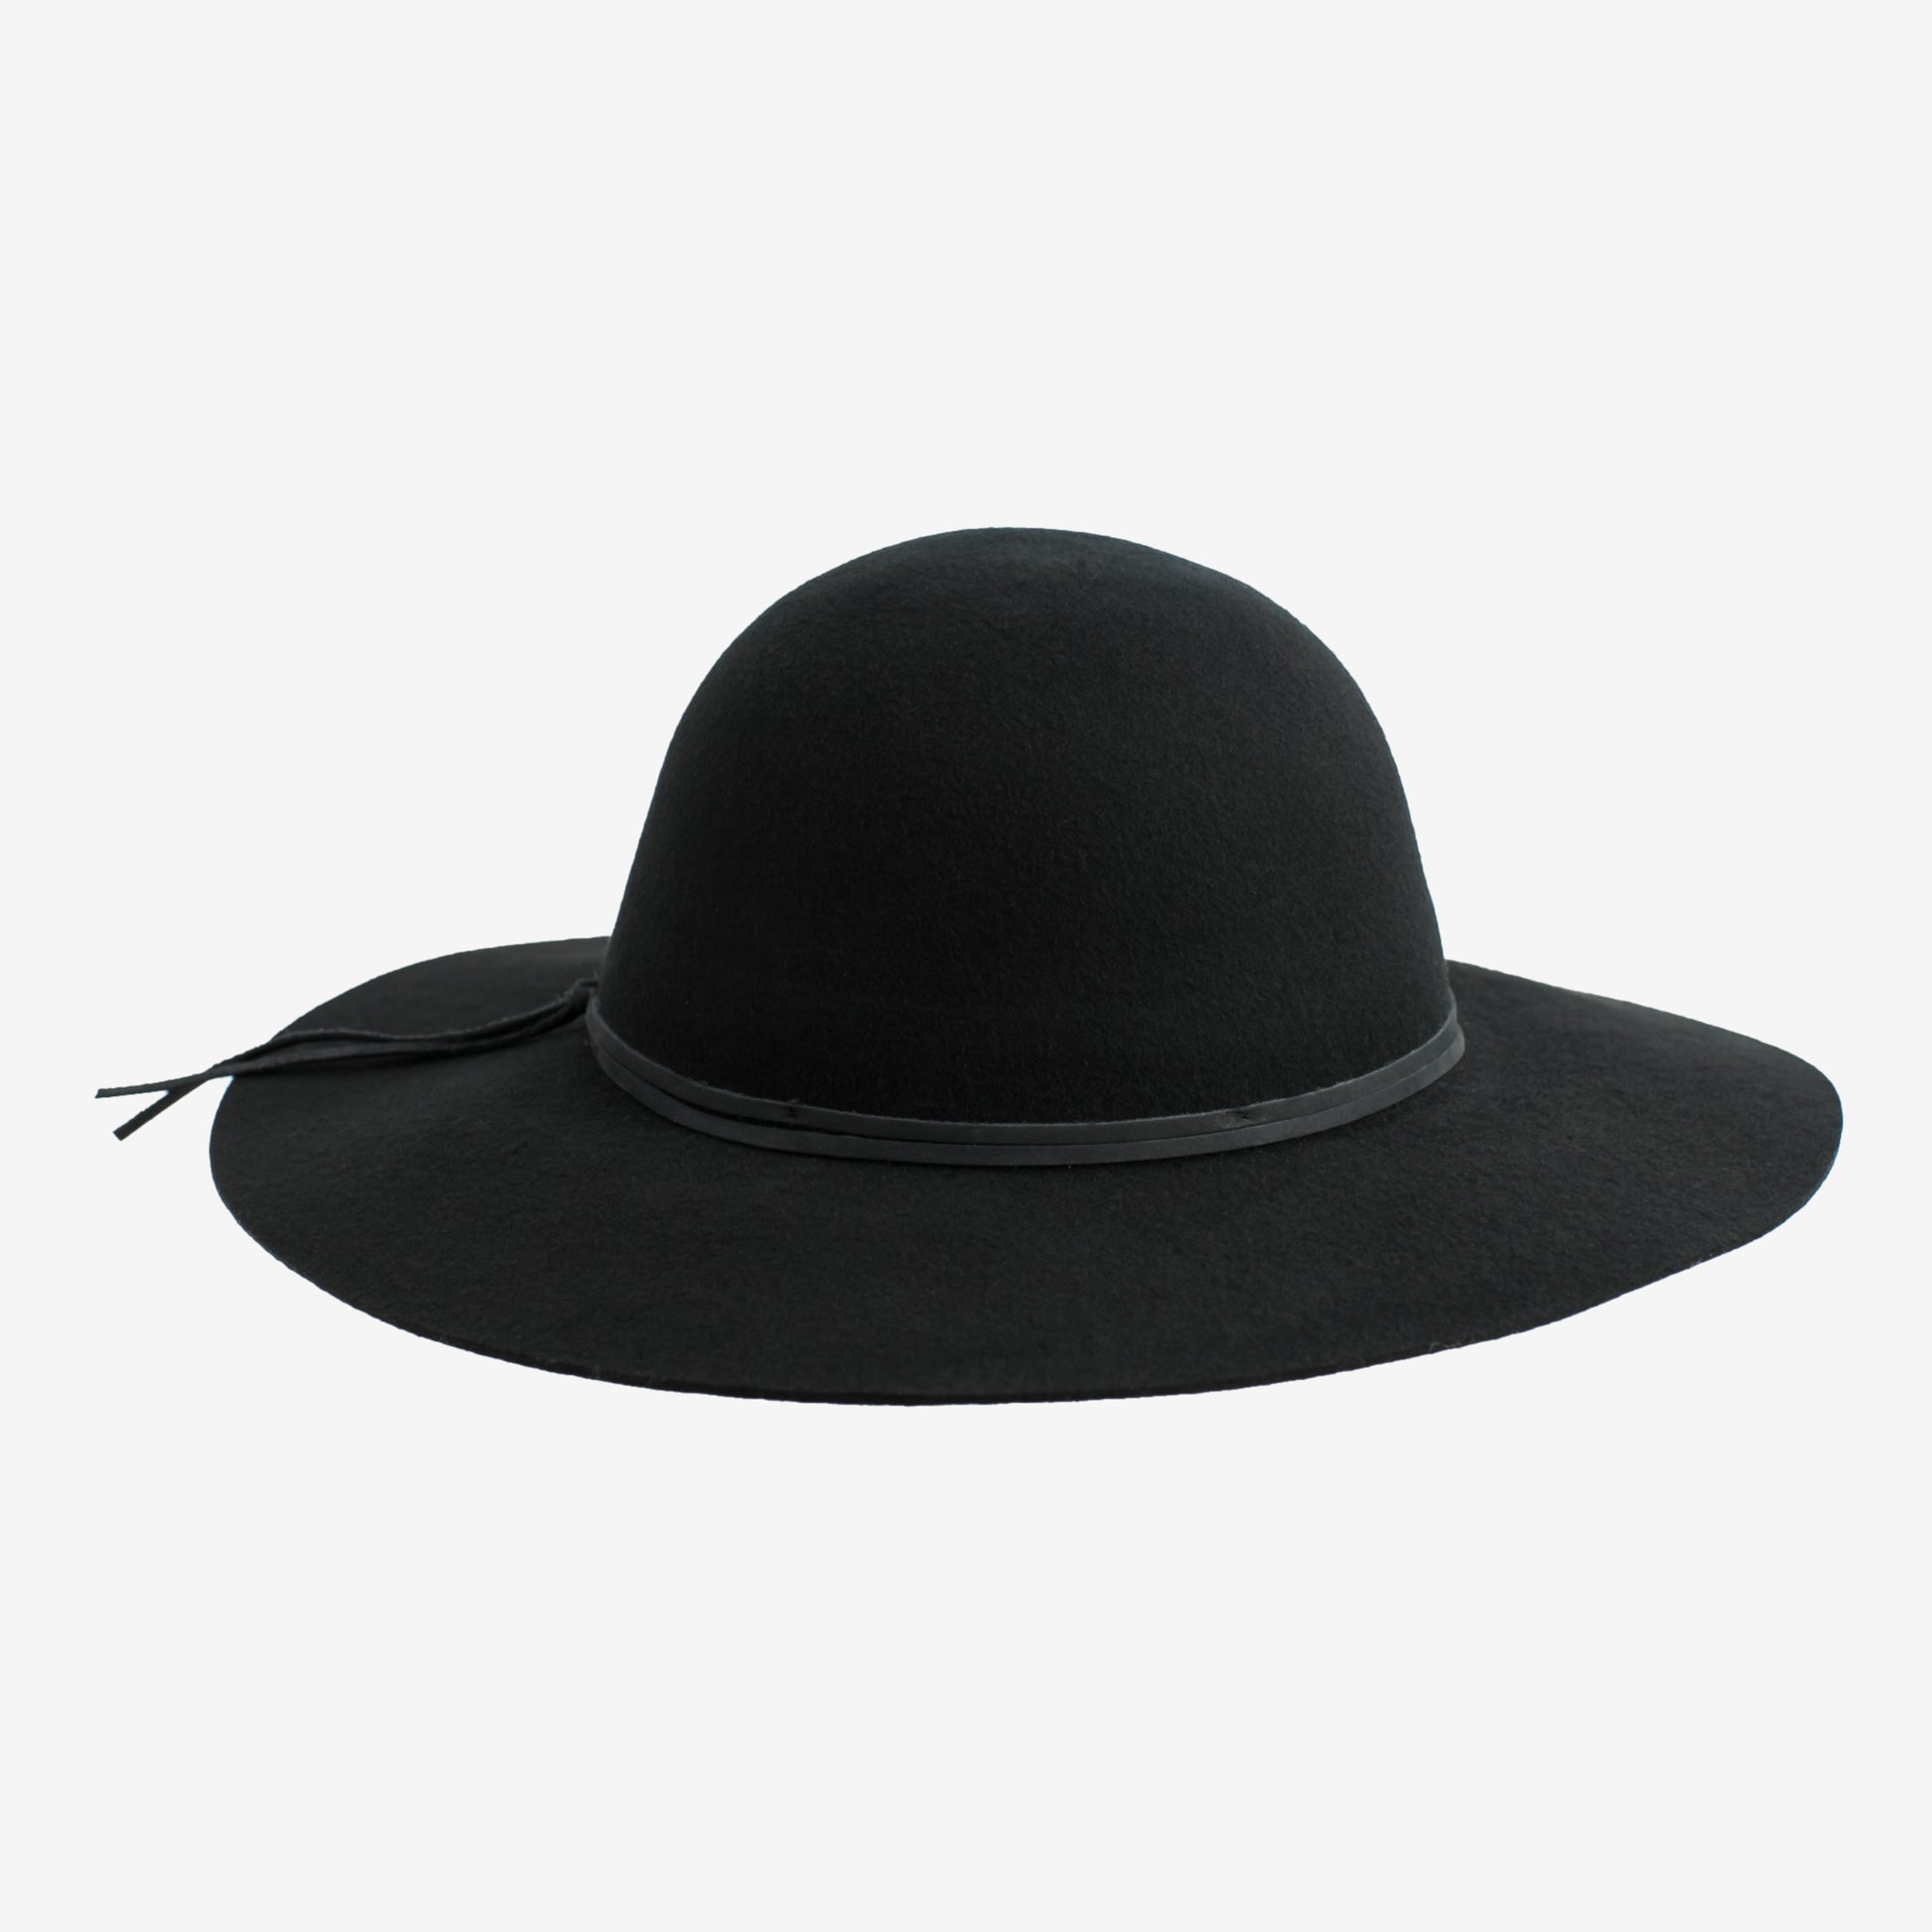 mindo-hats-isabella-round-wool-floppy-hat-black-front